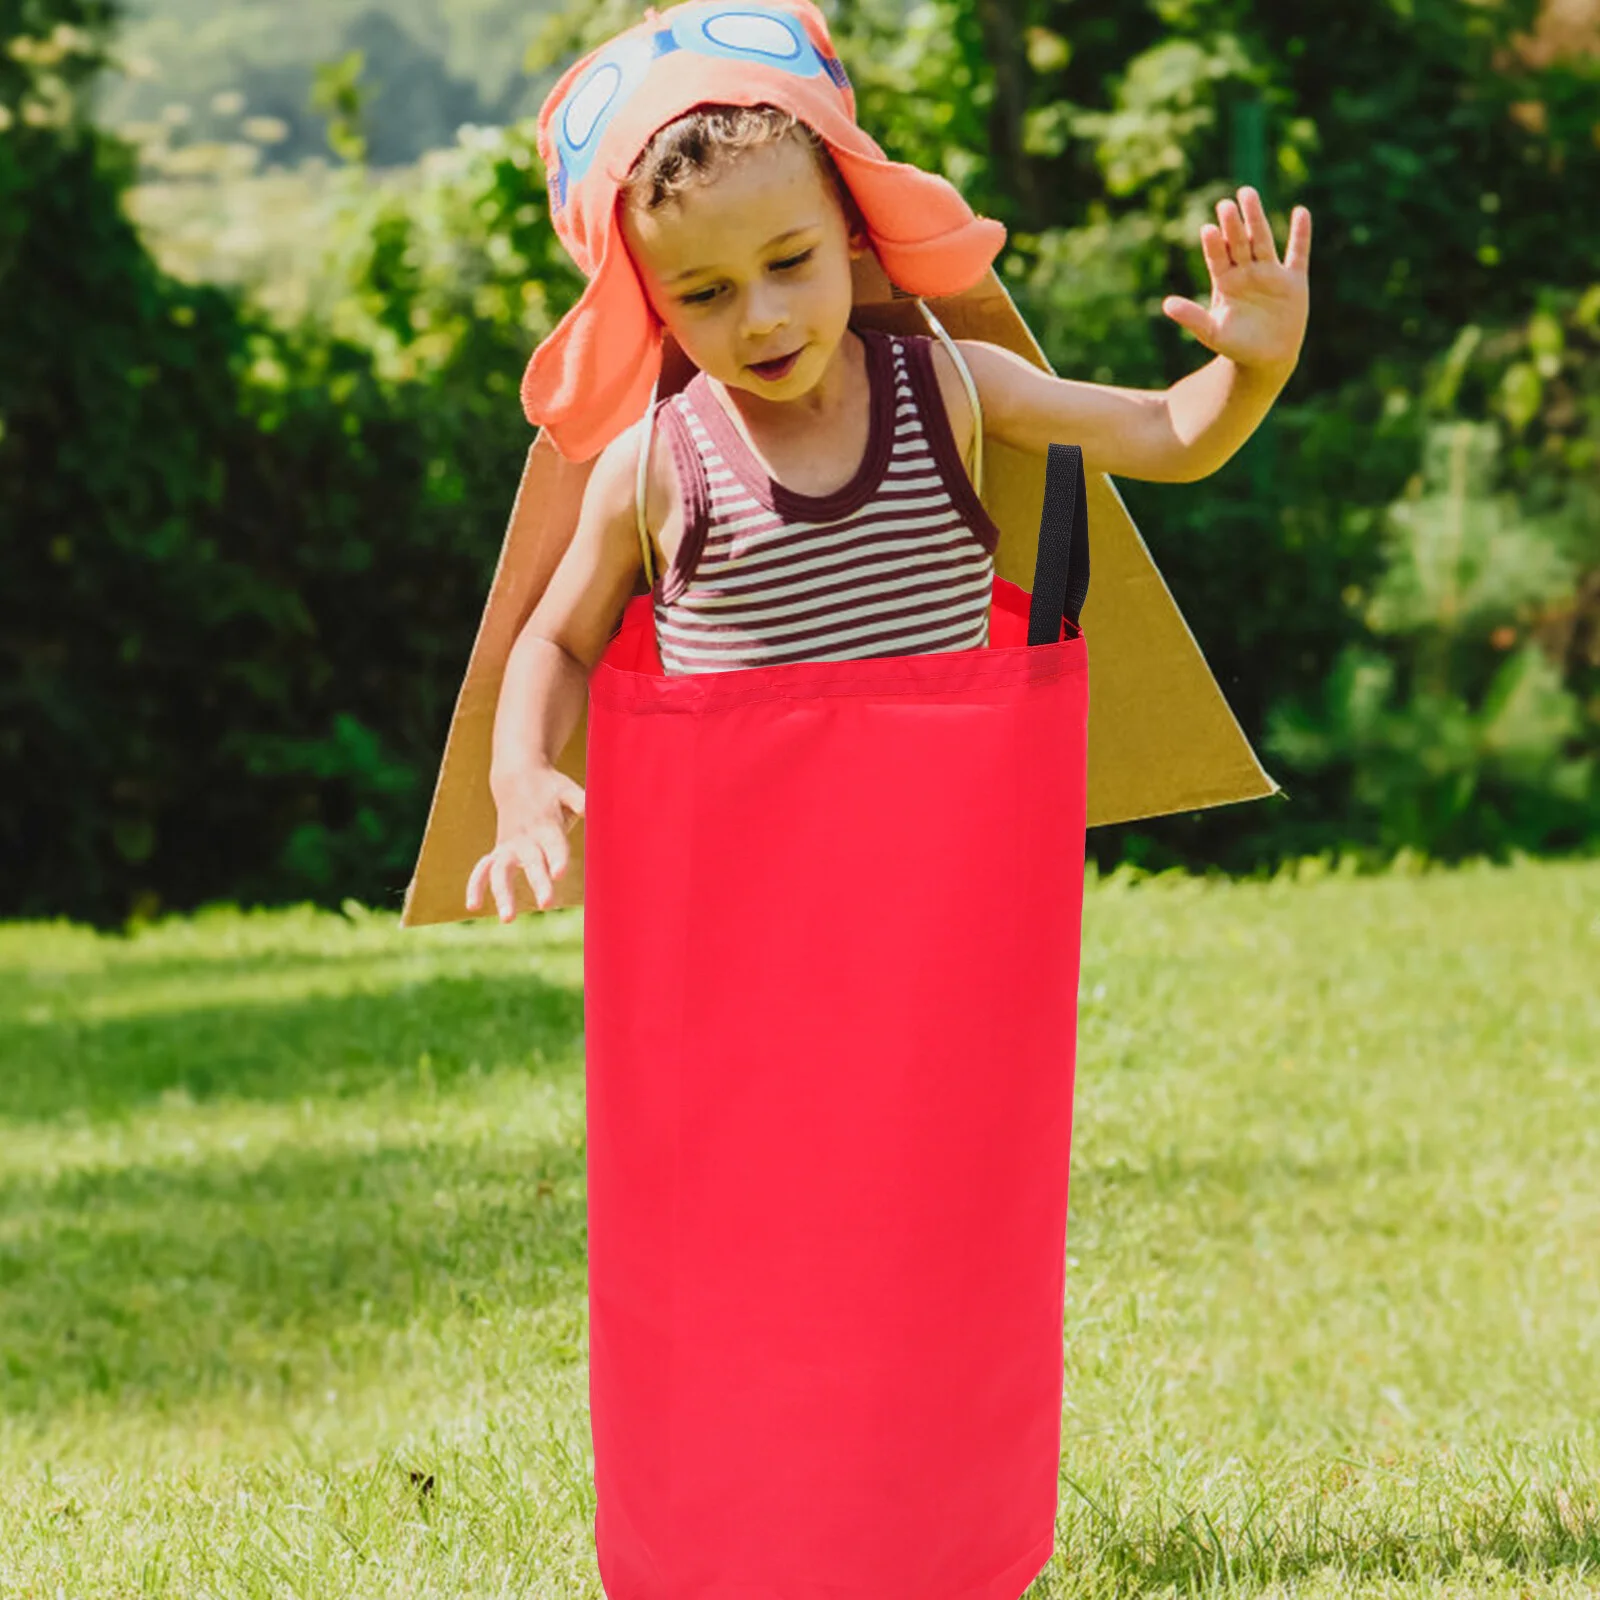 

Детская версия для карнавала, детская игрушка, Гоночное поле, сумки для игры на лужайке, игрушки для игр на открытом воздухе